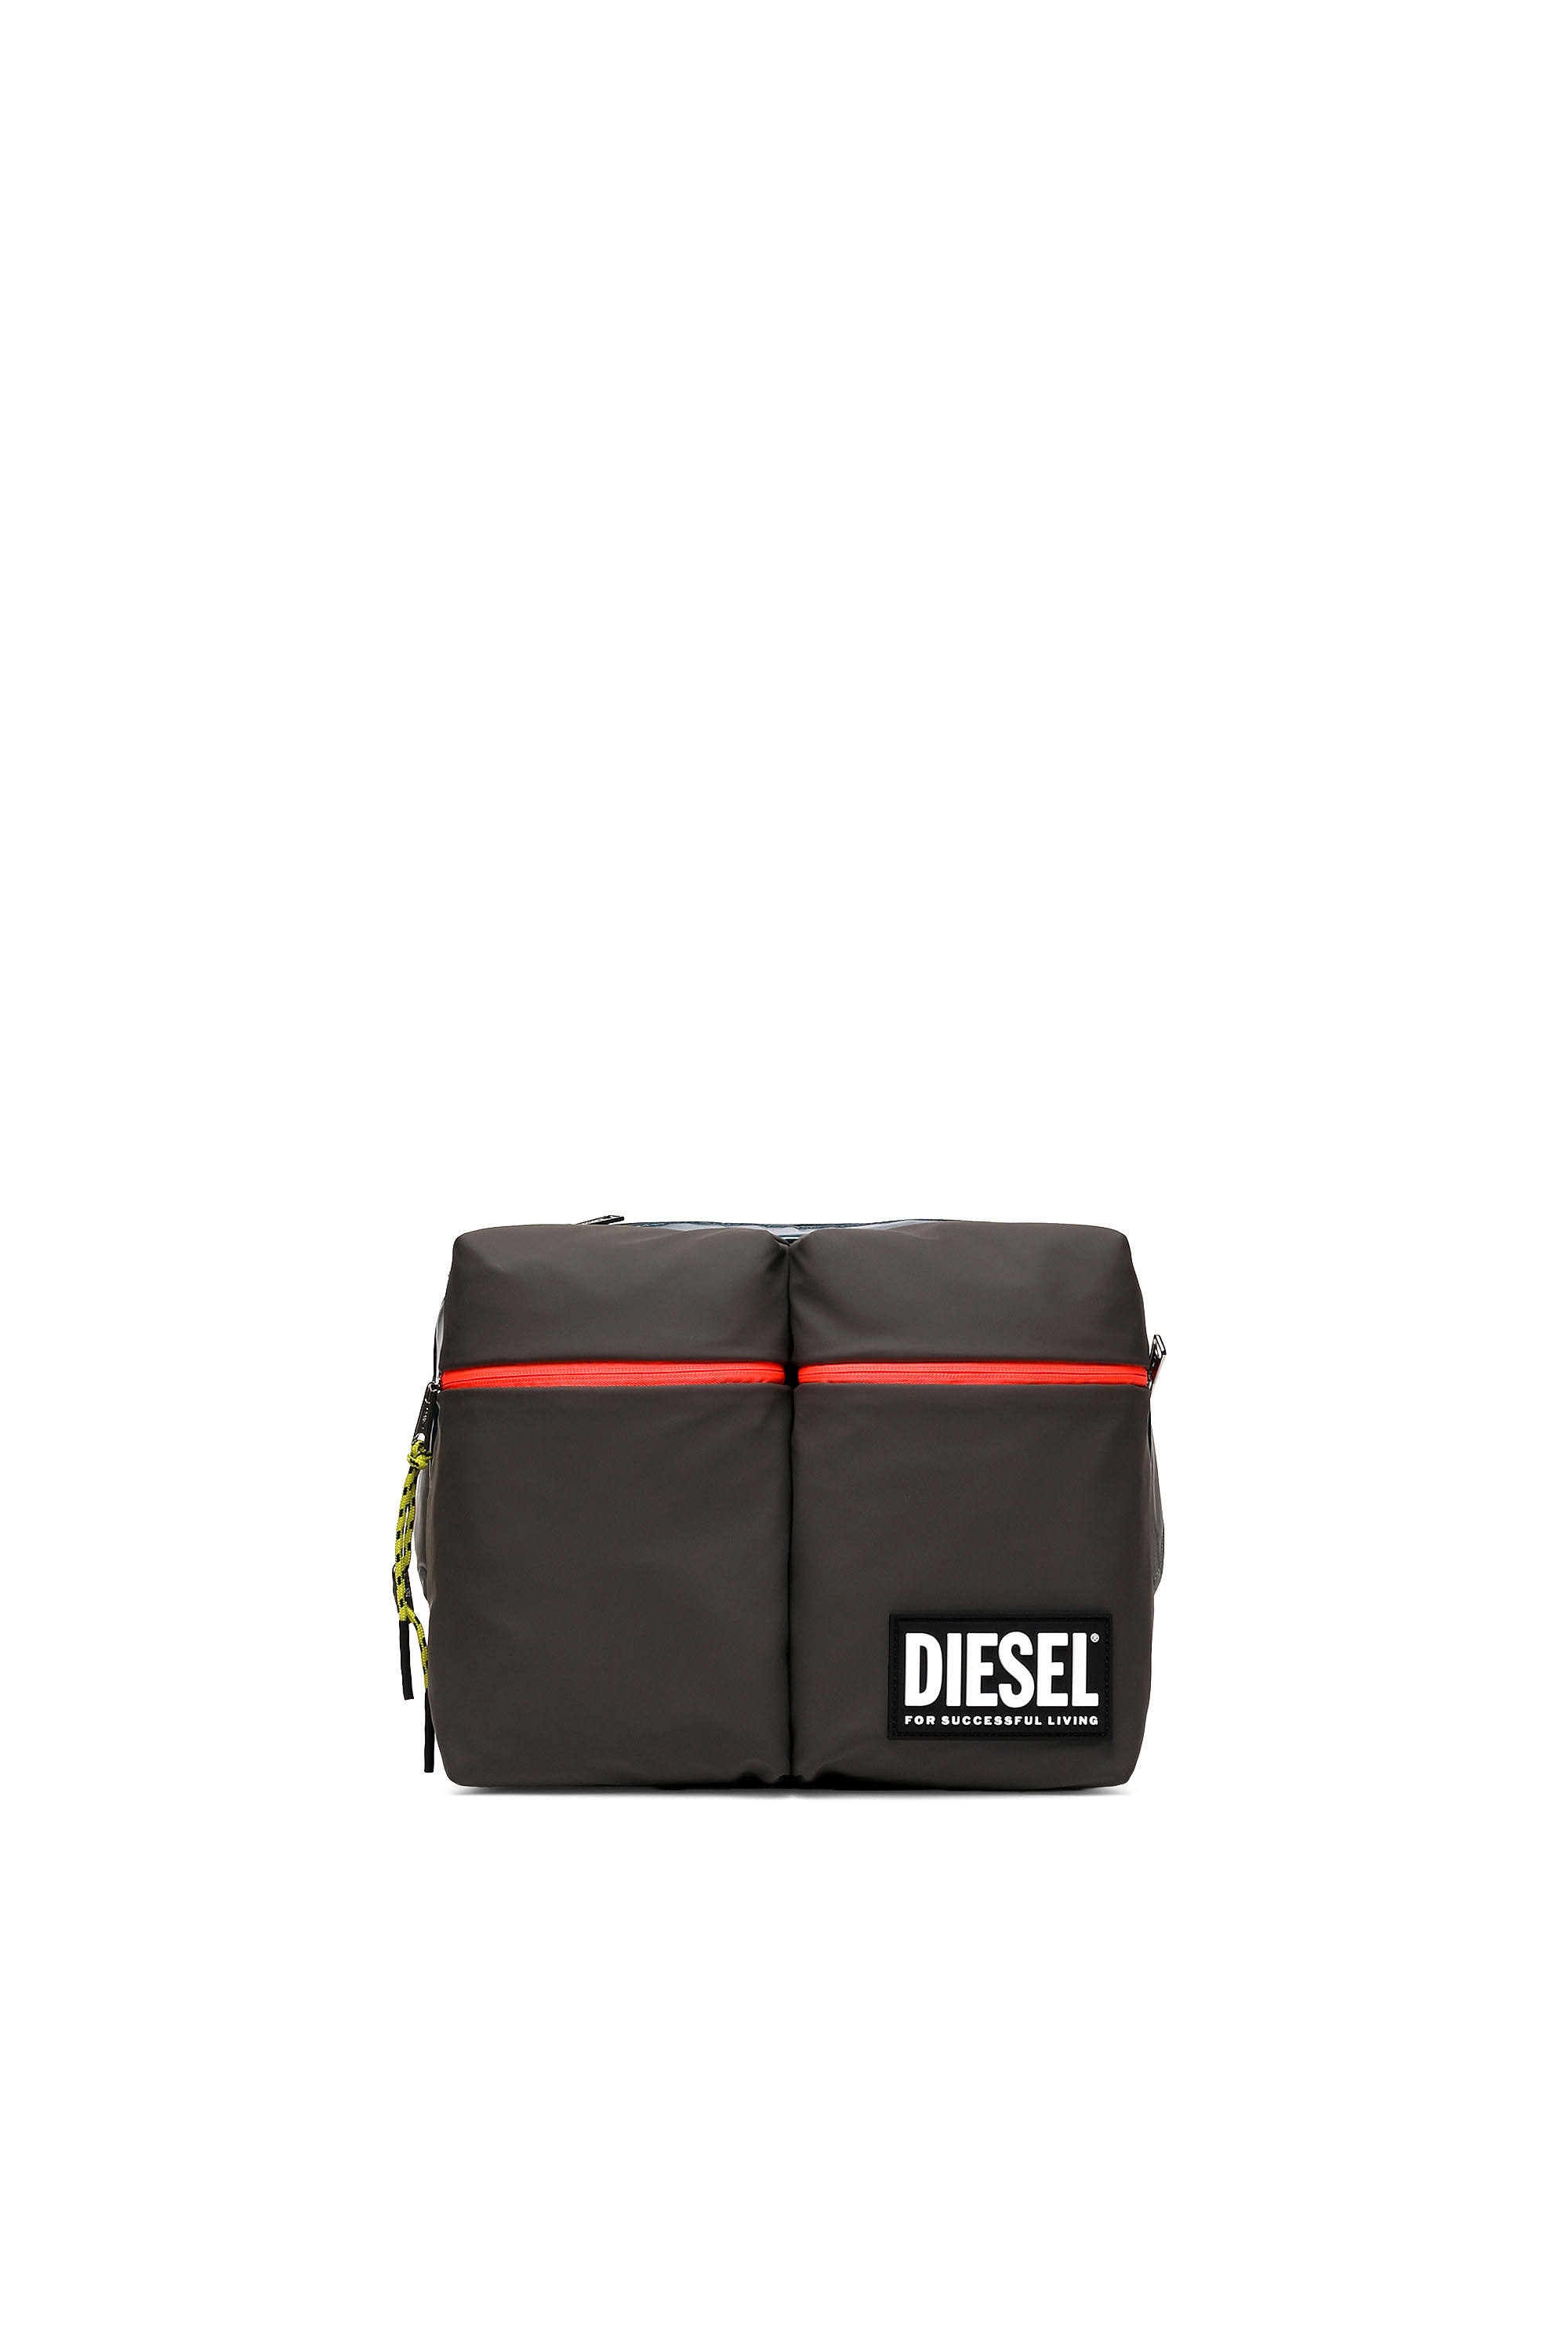 Diesel - CROSYO, Multicolor/Negro - Image 1